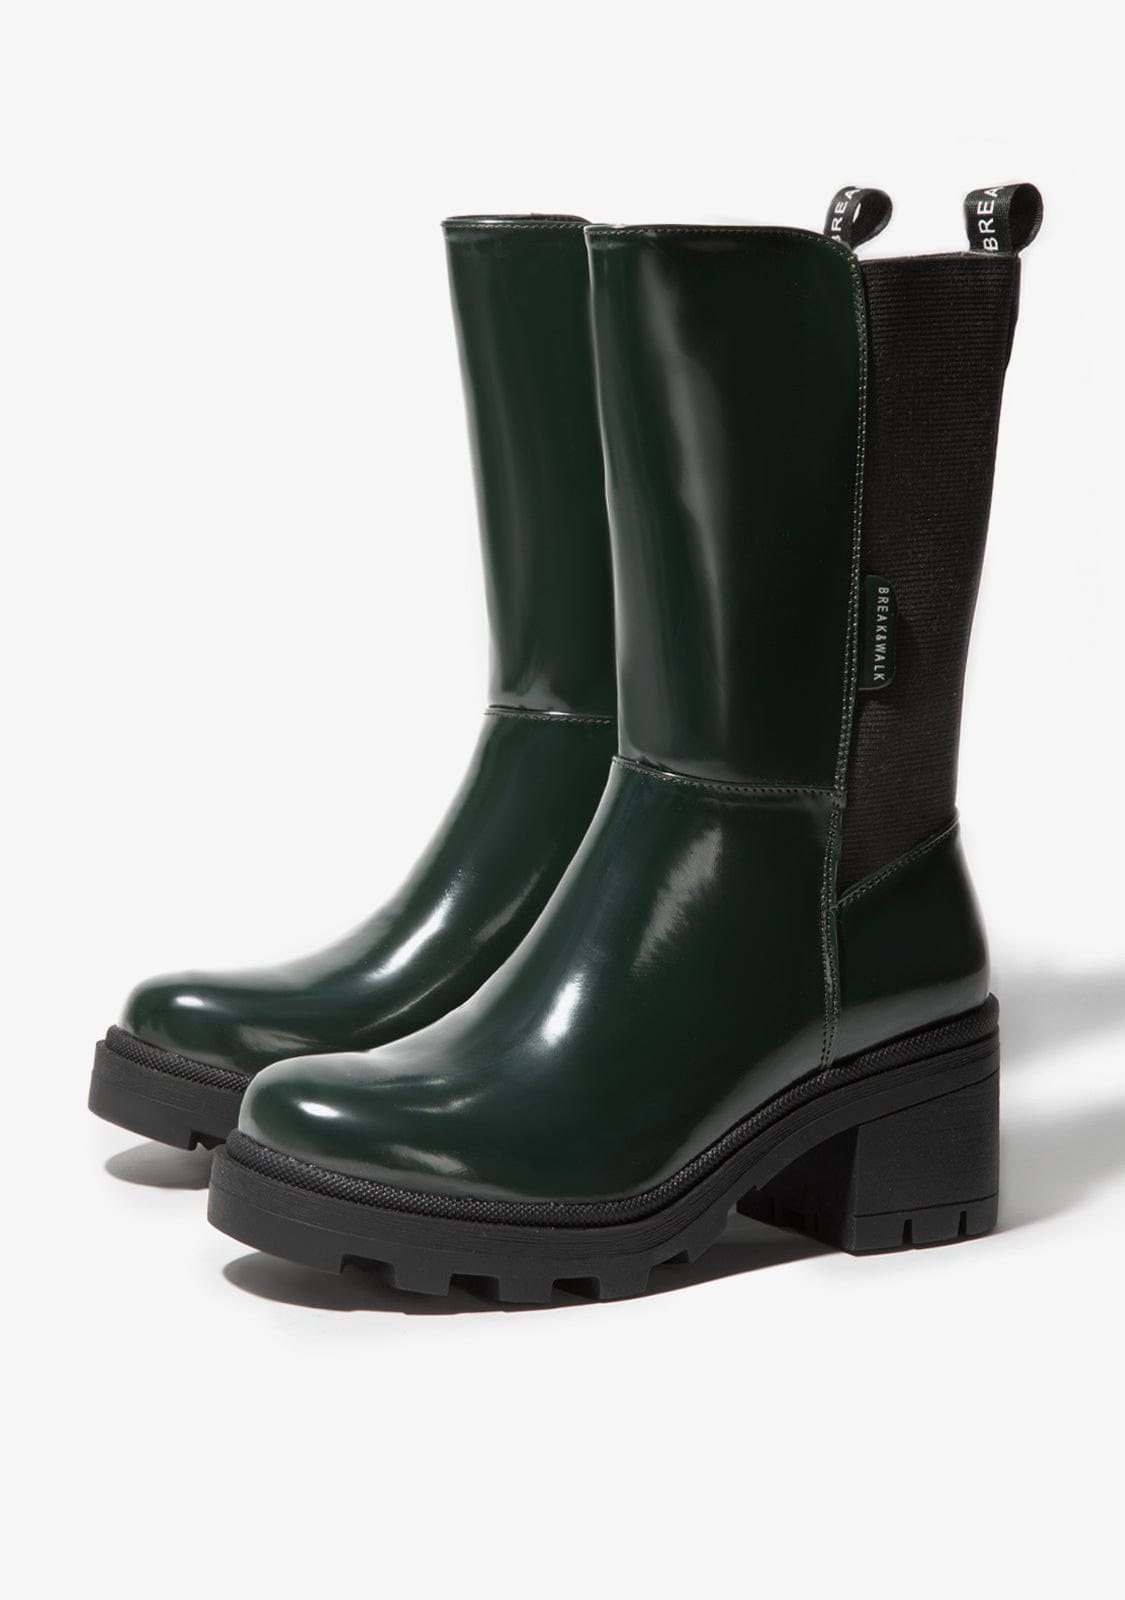 Boots Haute V2 Green